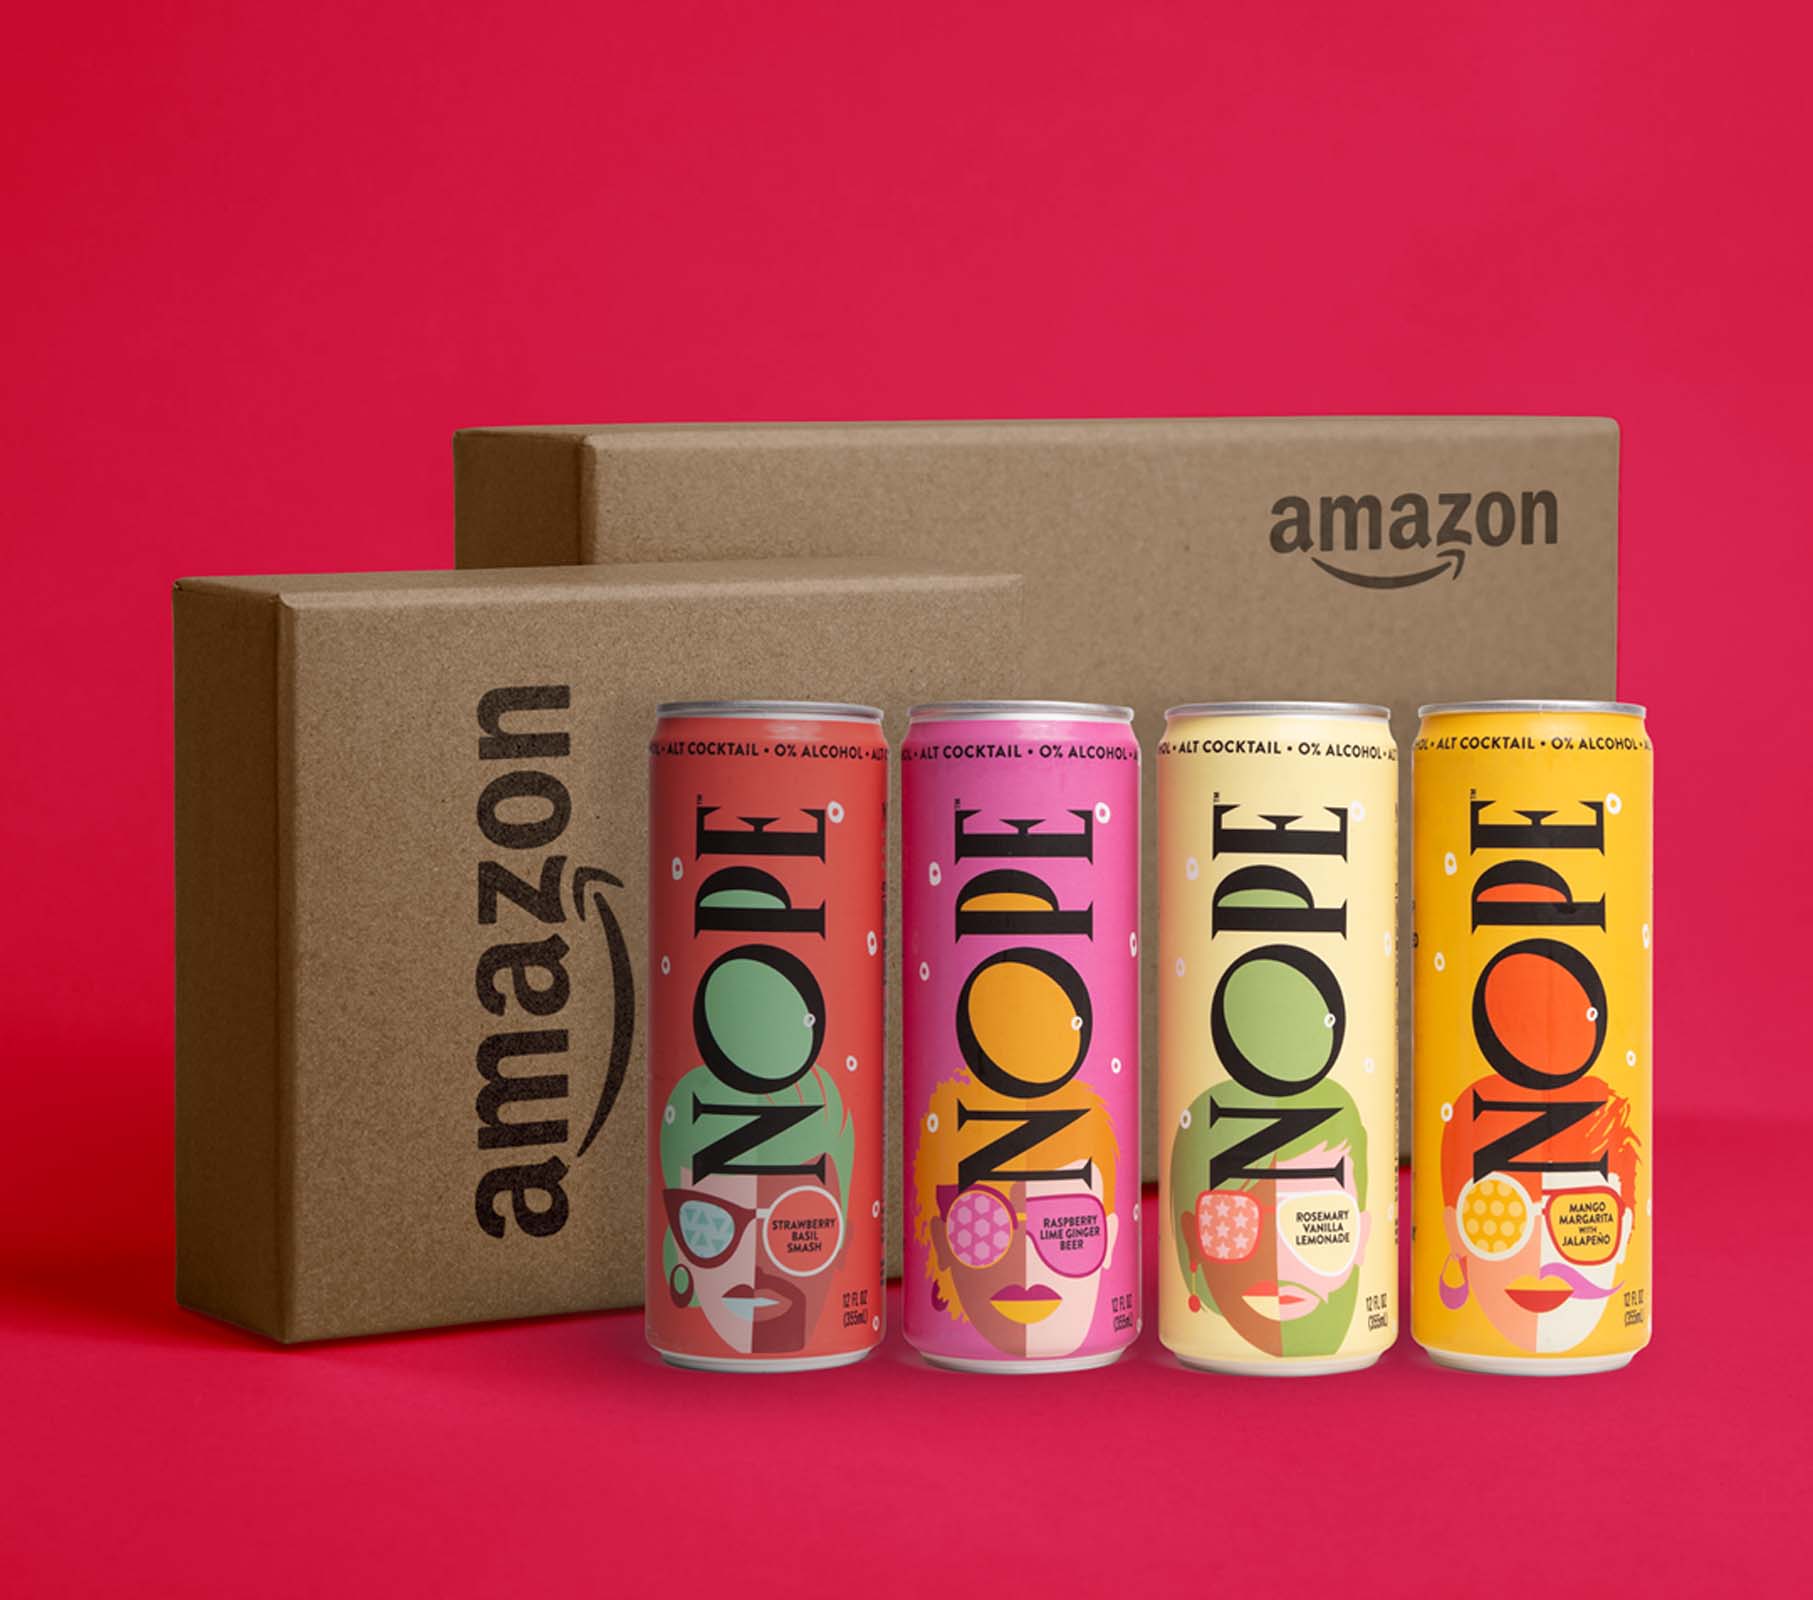 NOPE Beverages - Portfolio Image - Amazon Box Shipping Mockup Example